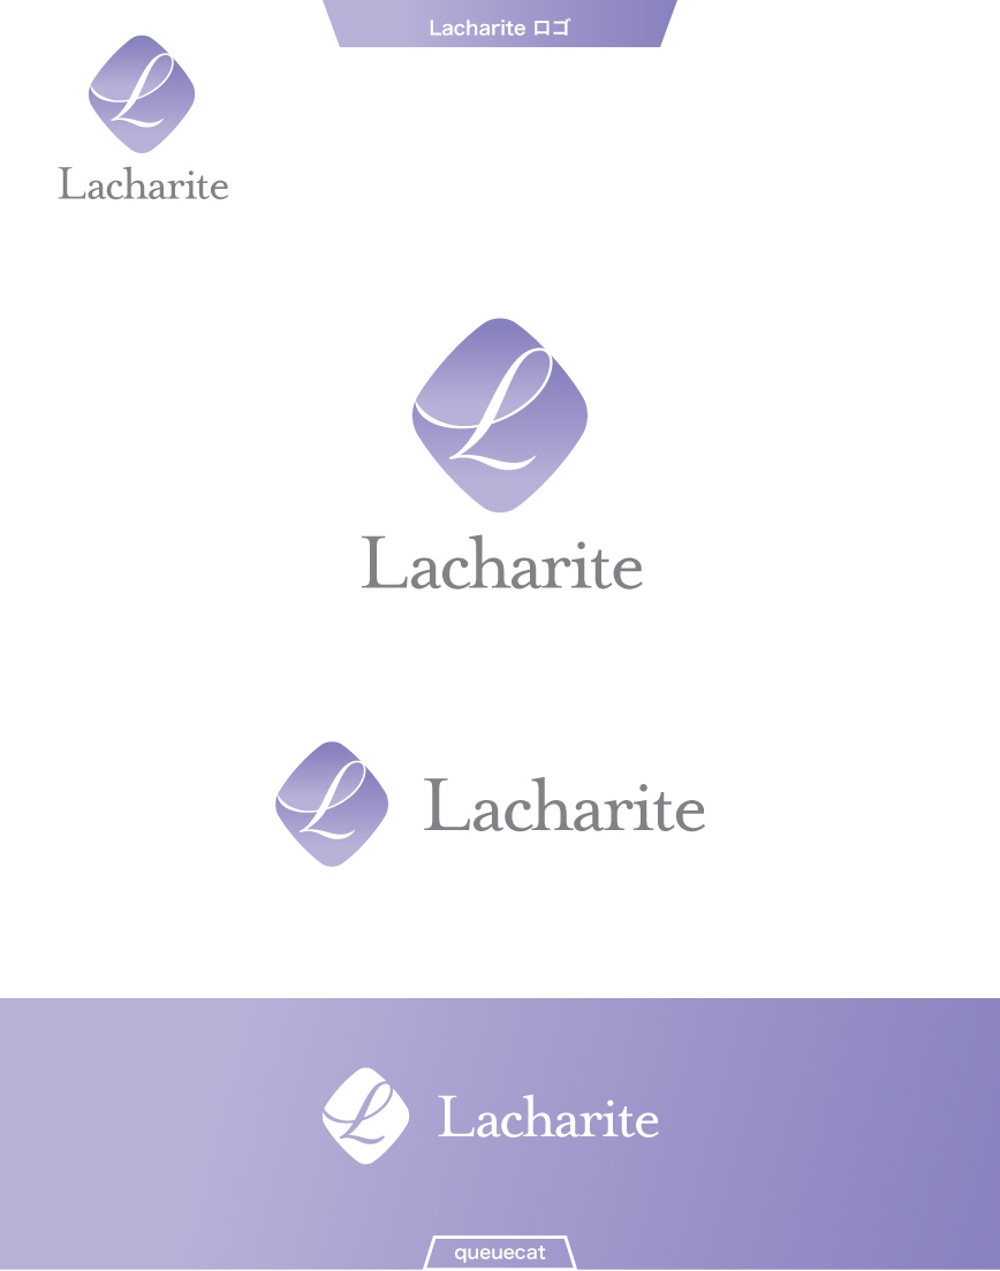 Lacharite1_2.jpg